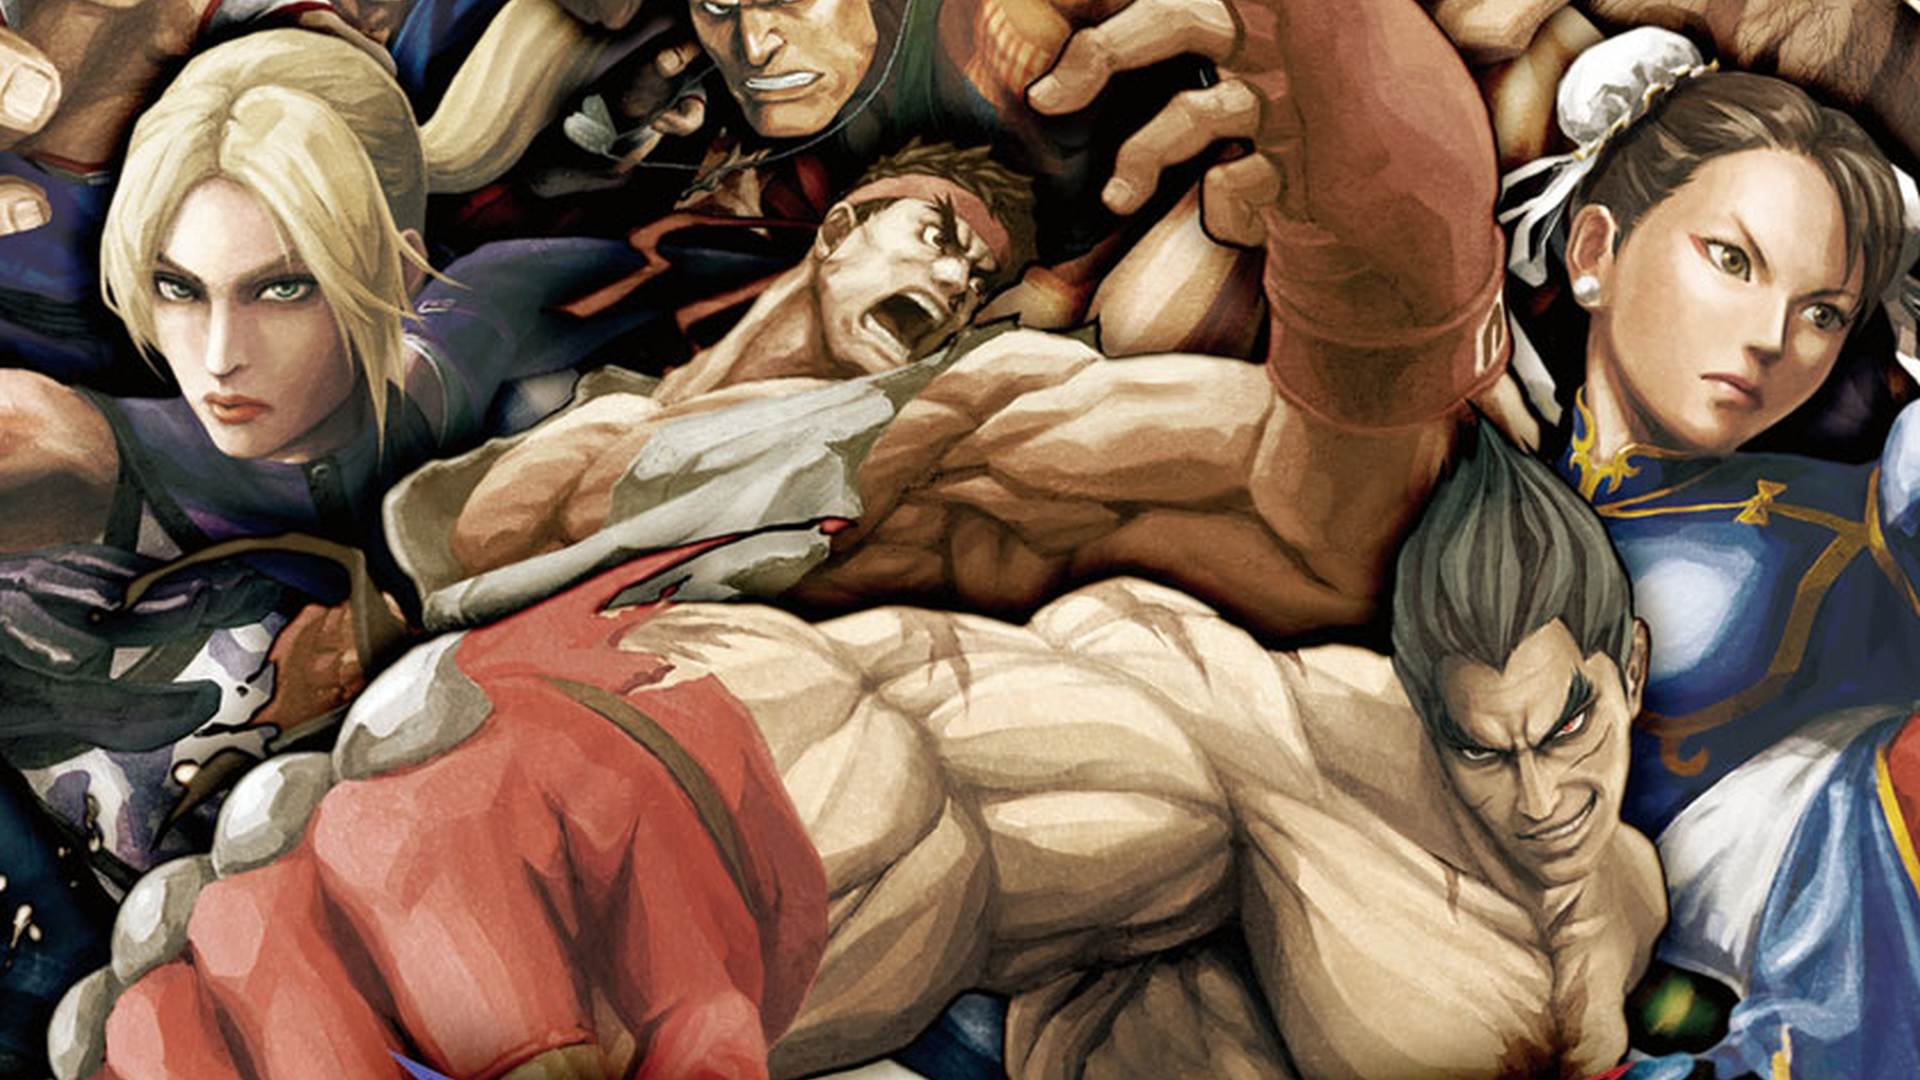 Street Fighter X Tekken developers announce final set of balance